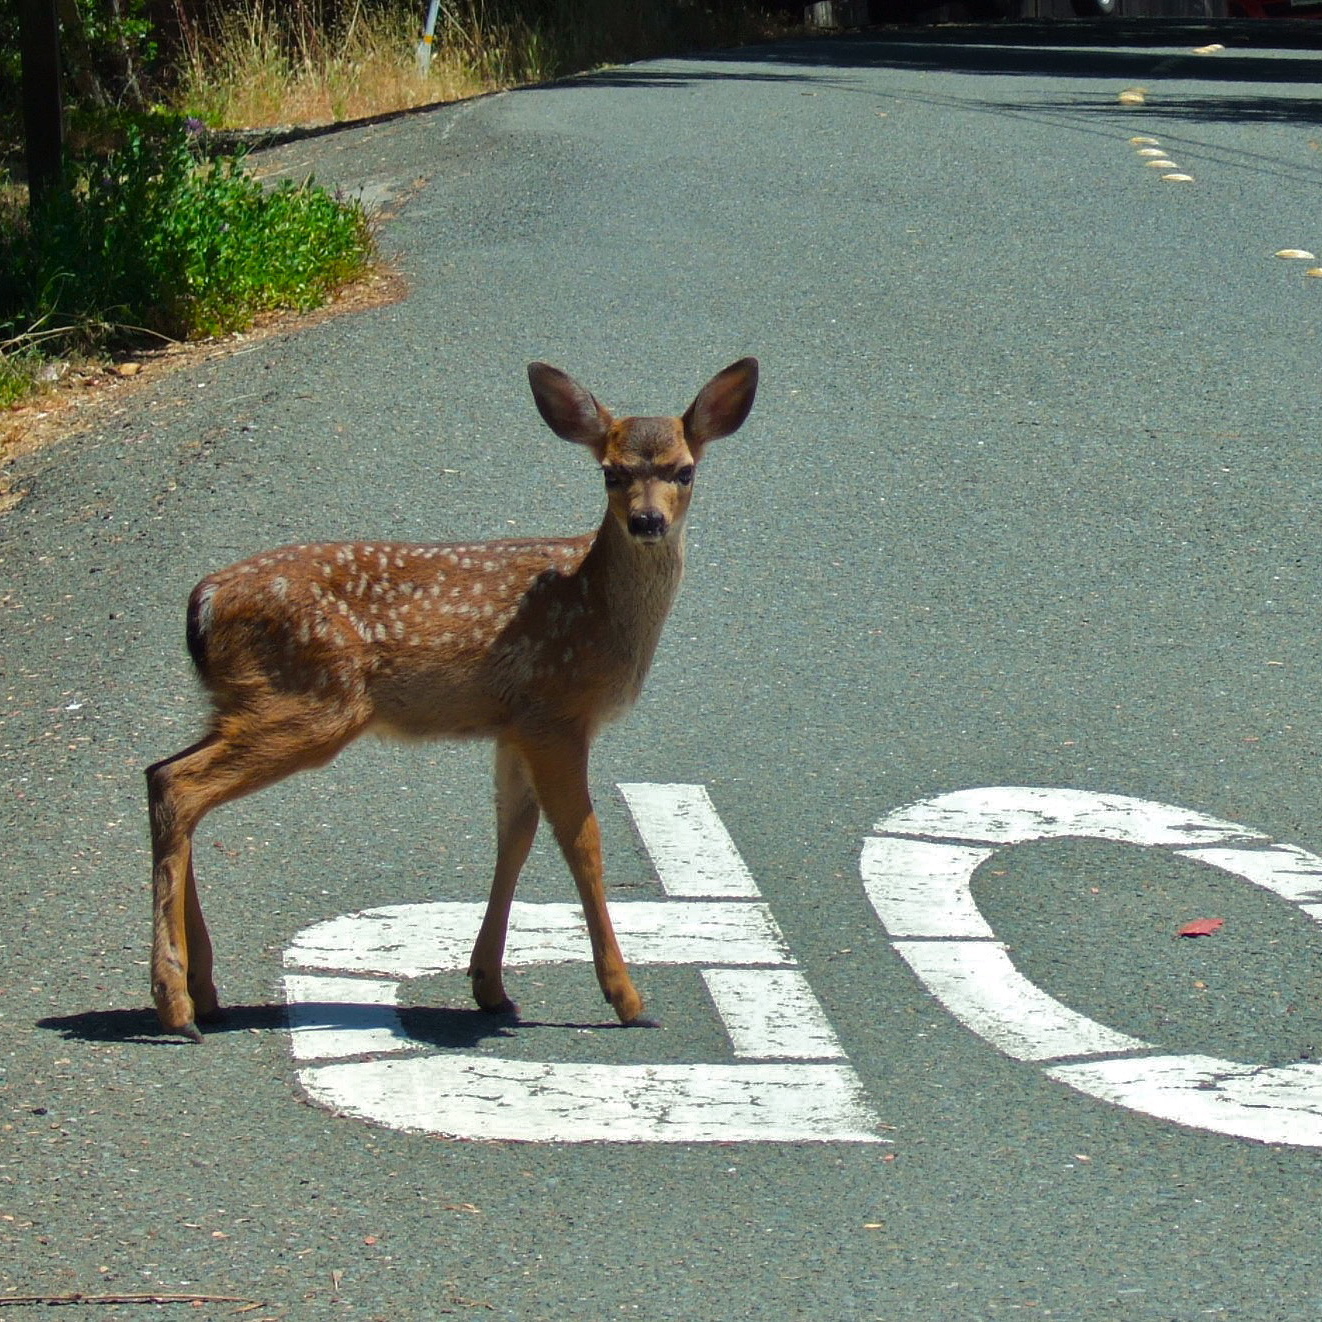 Deer in the Road photo